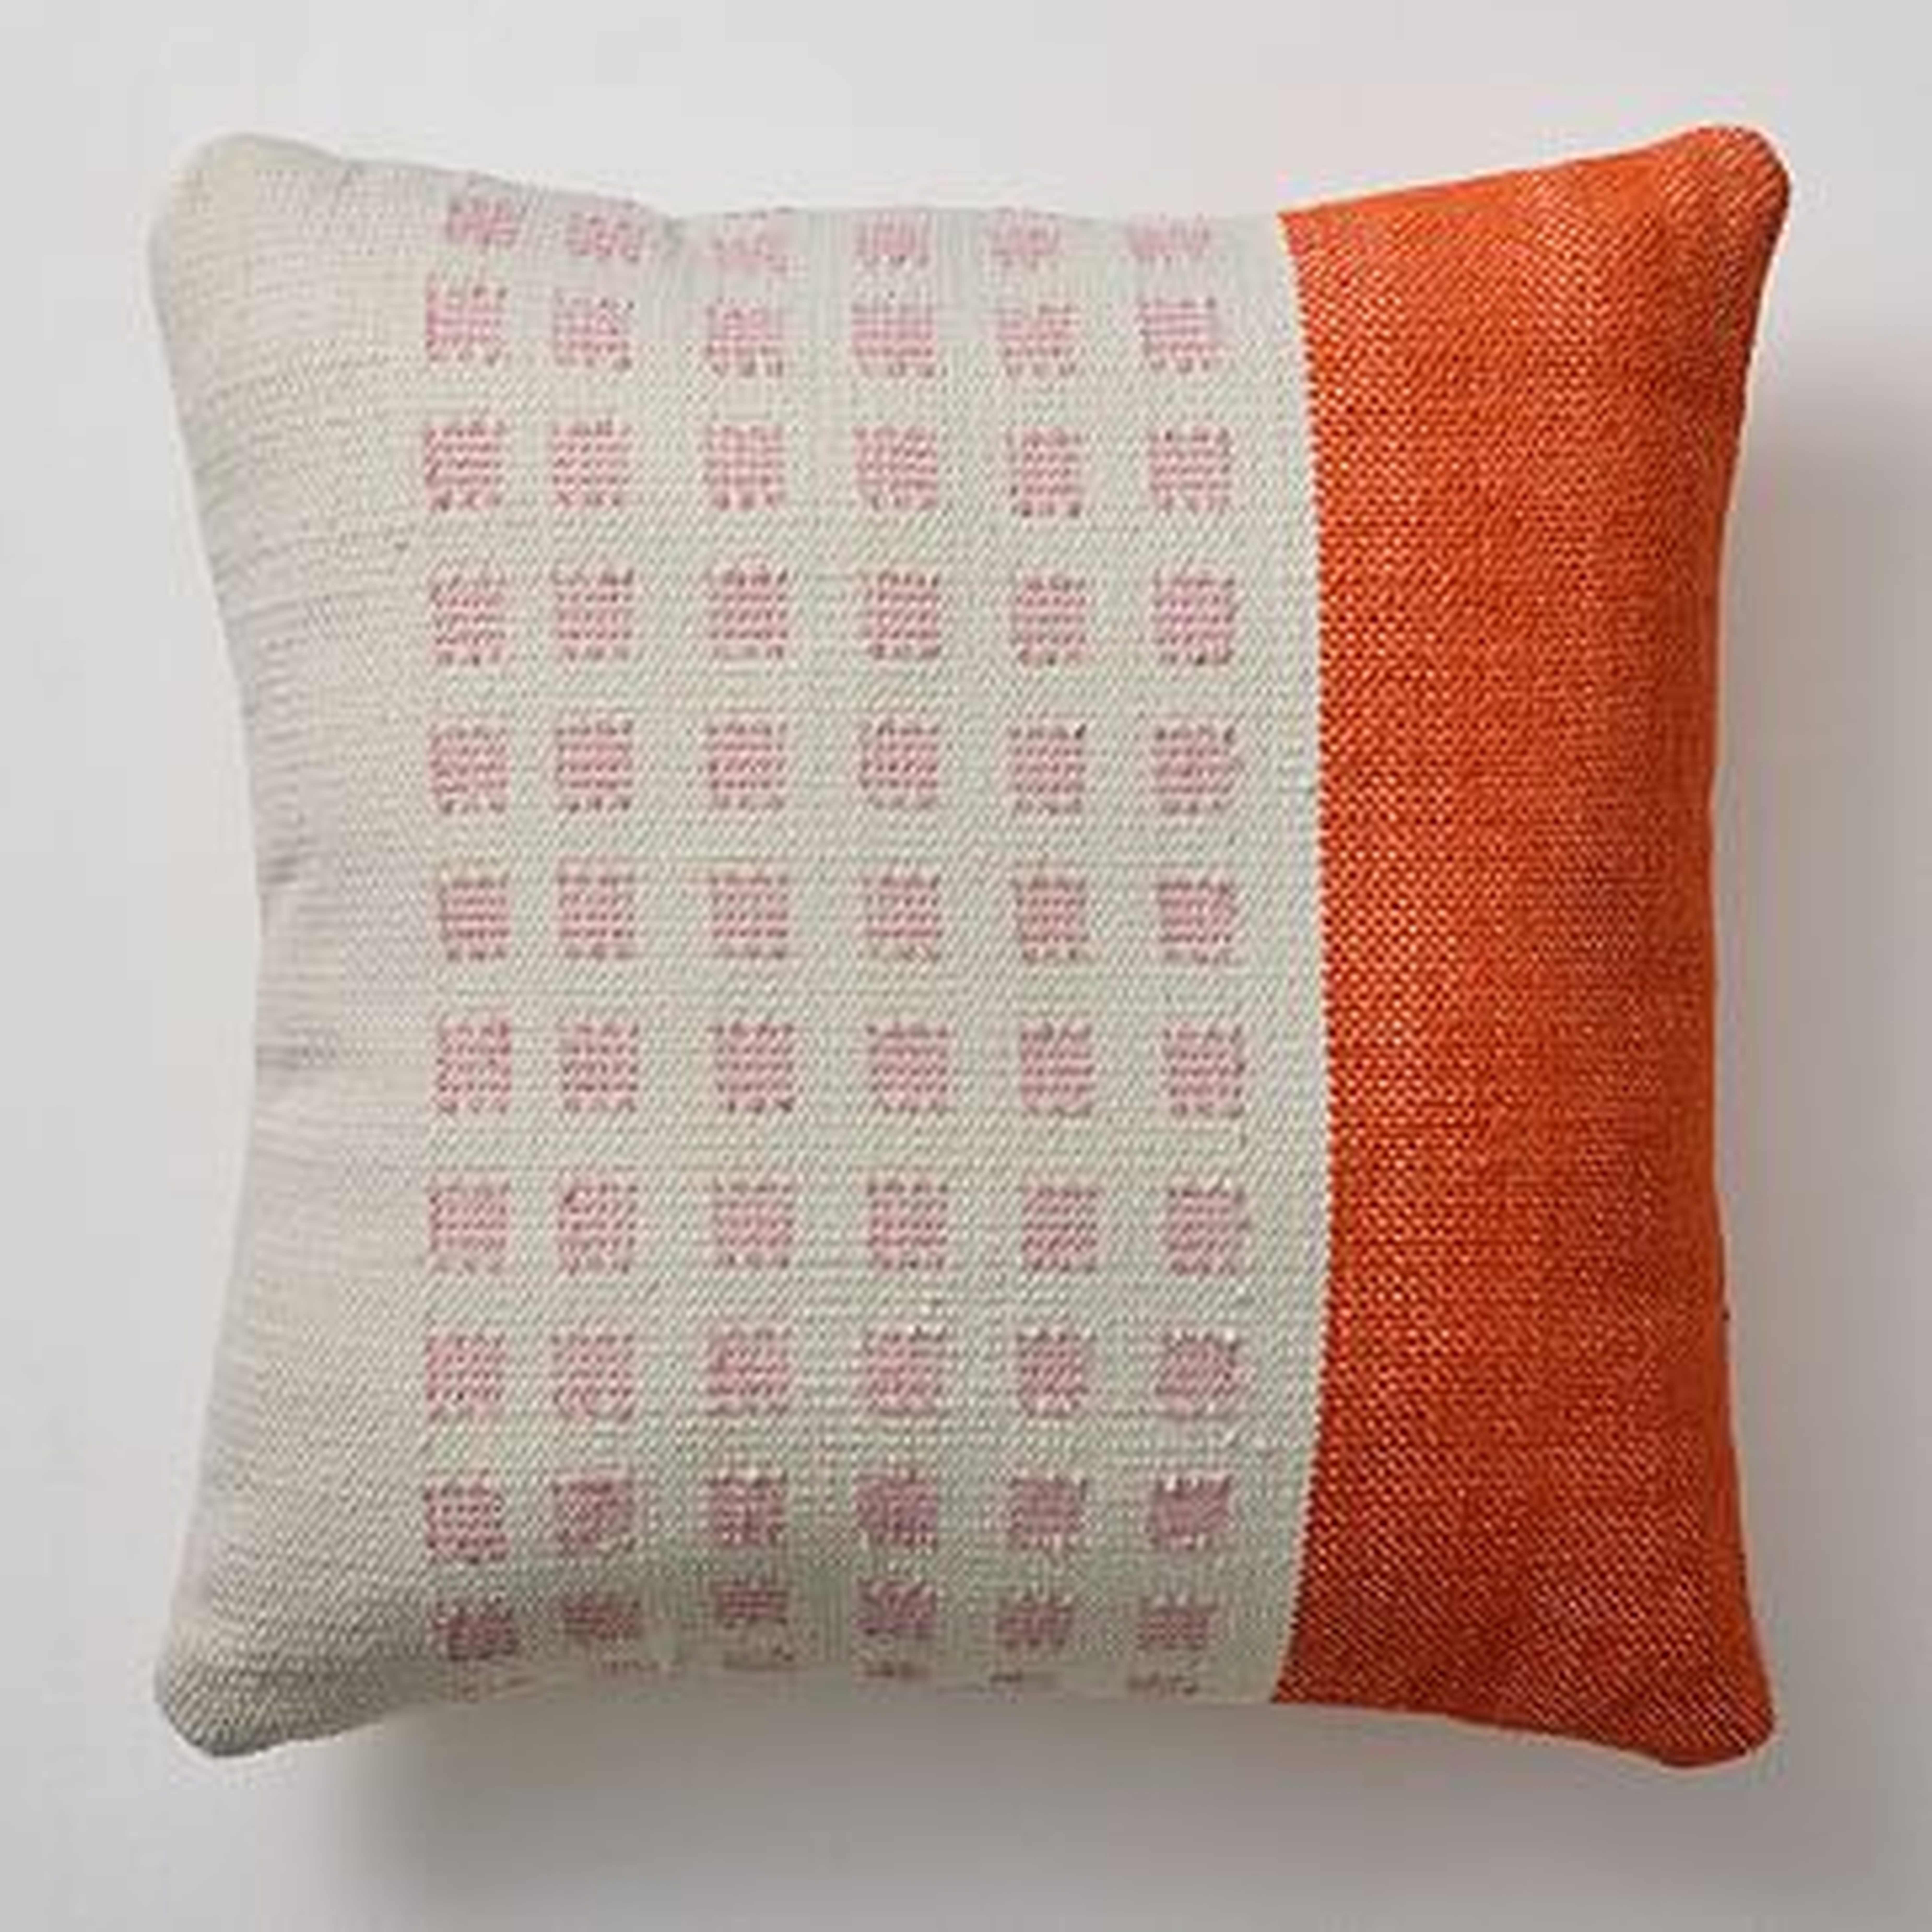 Bole Road Colorblock Check Indoor/Outdoor Pillow, Tangerine, 24"x24" - West Elm